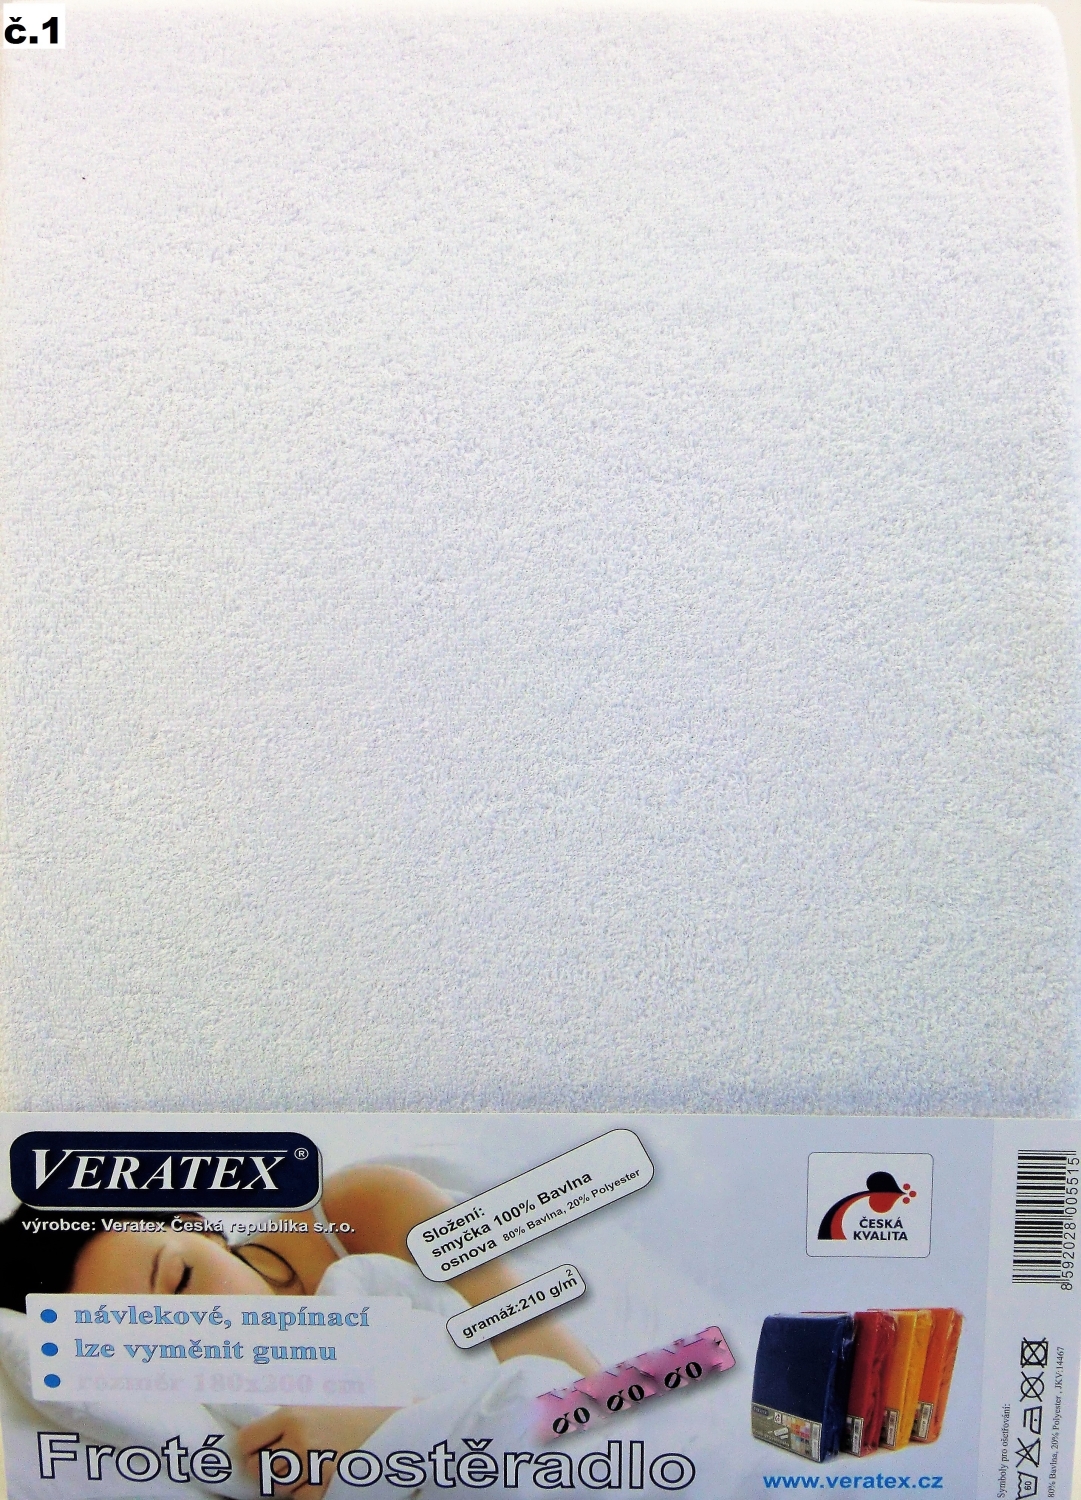 Veratex Froté prostěradlo 200x200 cm (č. 1-bílá)